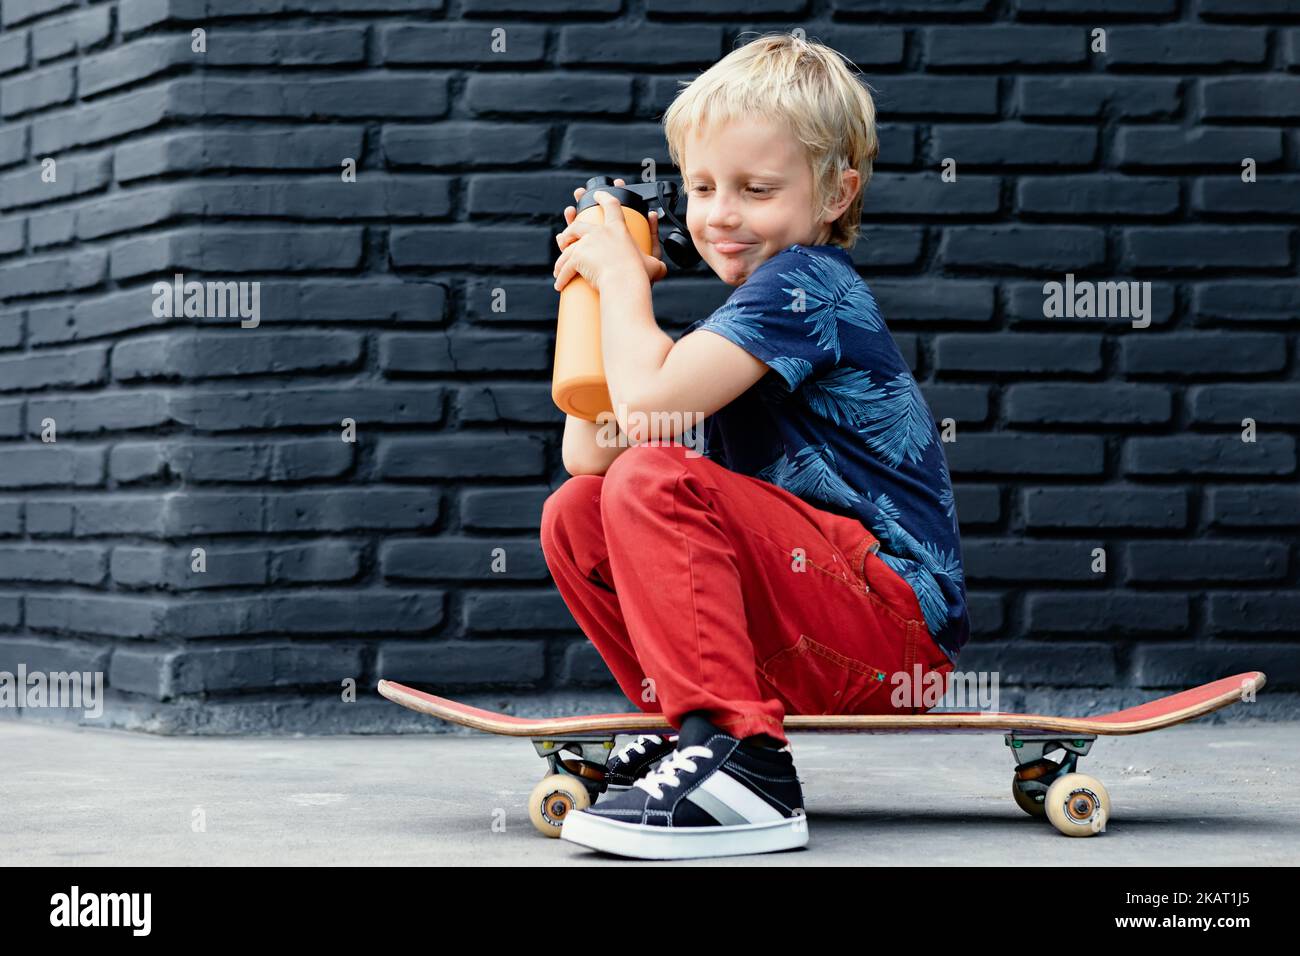 Le jeune patineur s'assoit sur le skateboard, boit de l'eau fraîche du biberon réutilisable après la formation des enfants. Vie familiale active, climatisation de loisirs en extérieur Banque D'Images